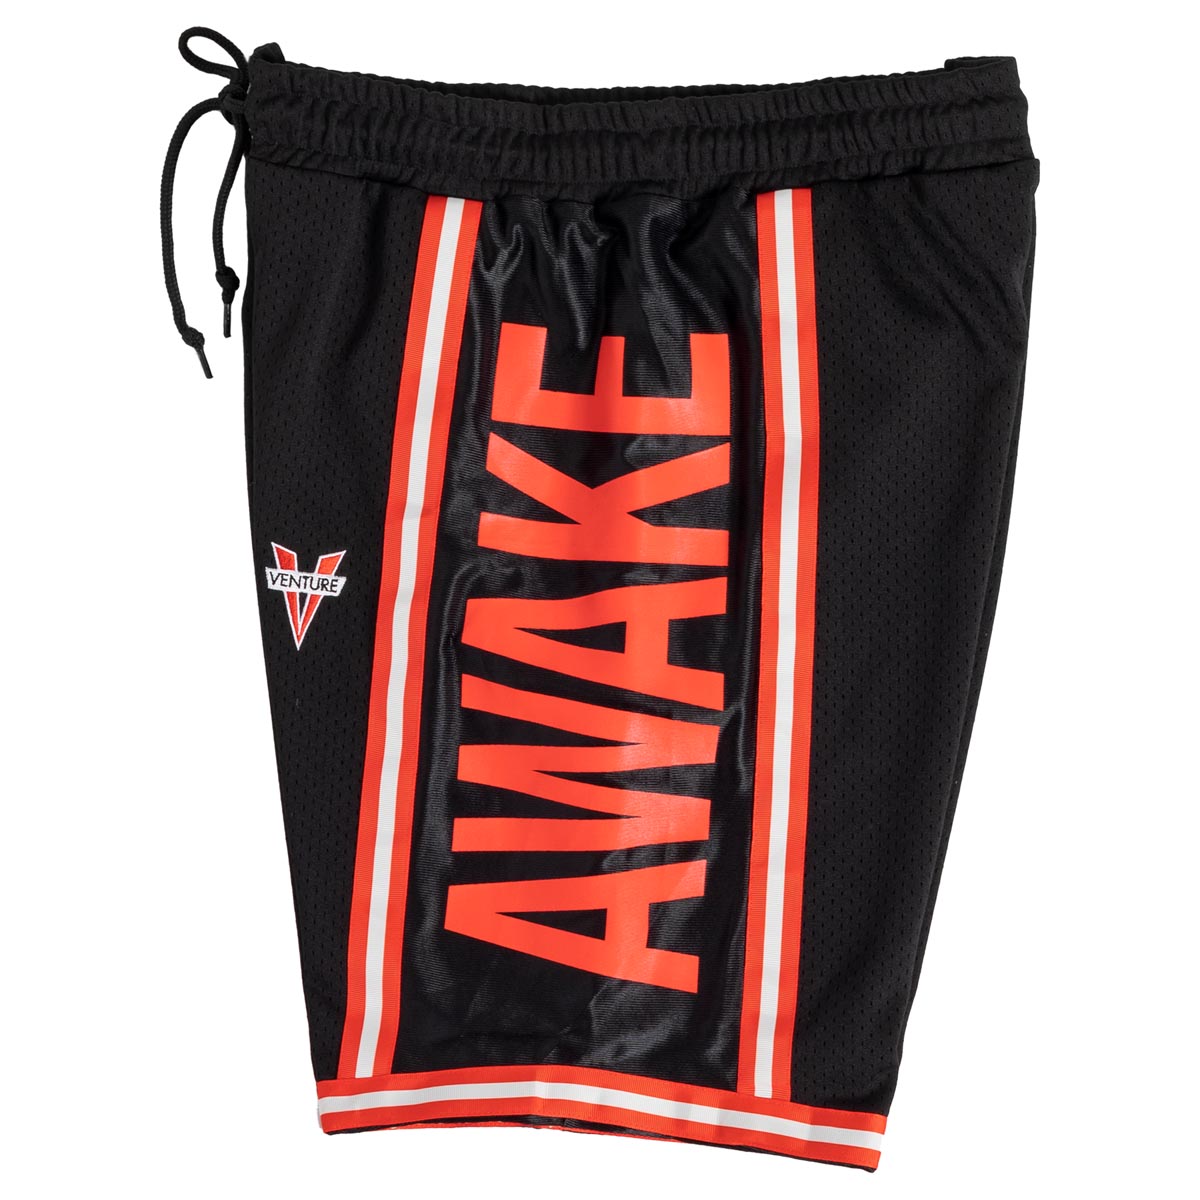 Venture Awake Shorts - Black/Red/White image 3